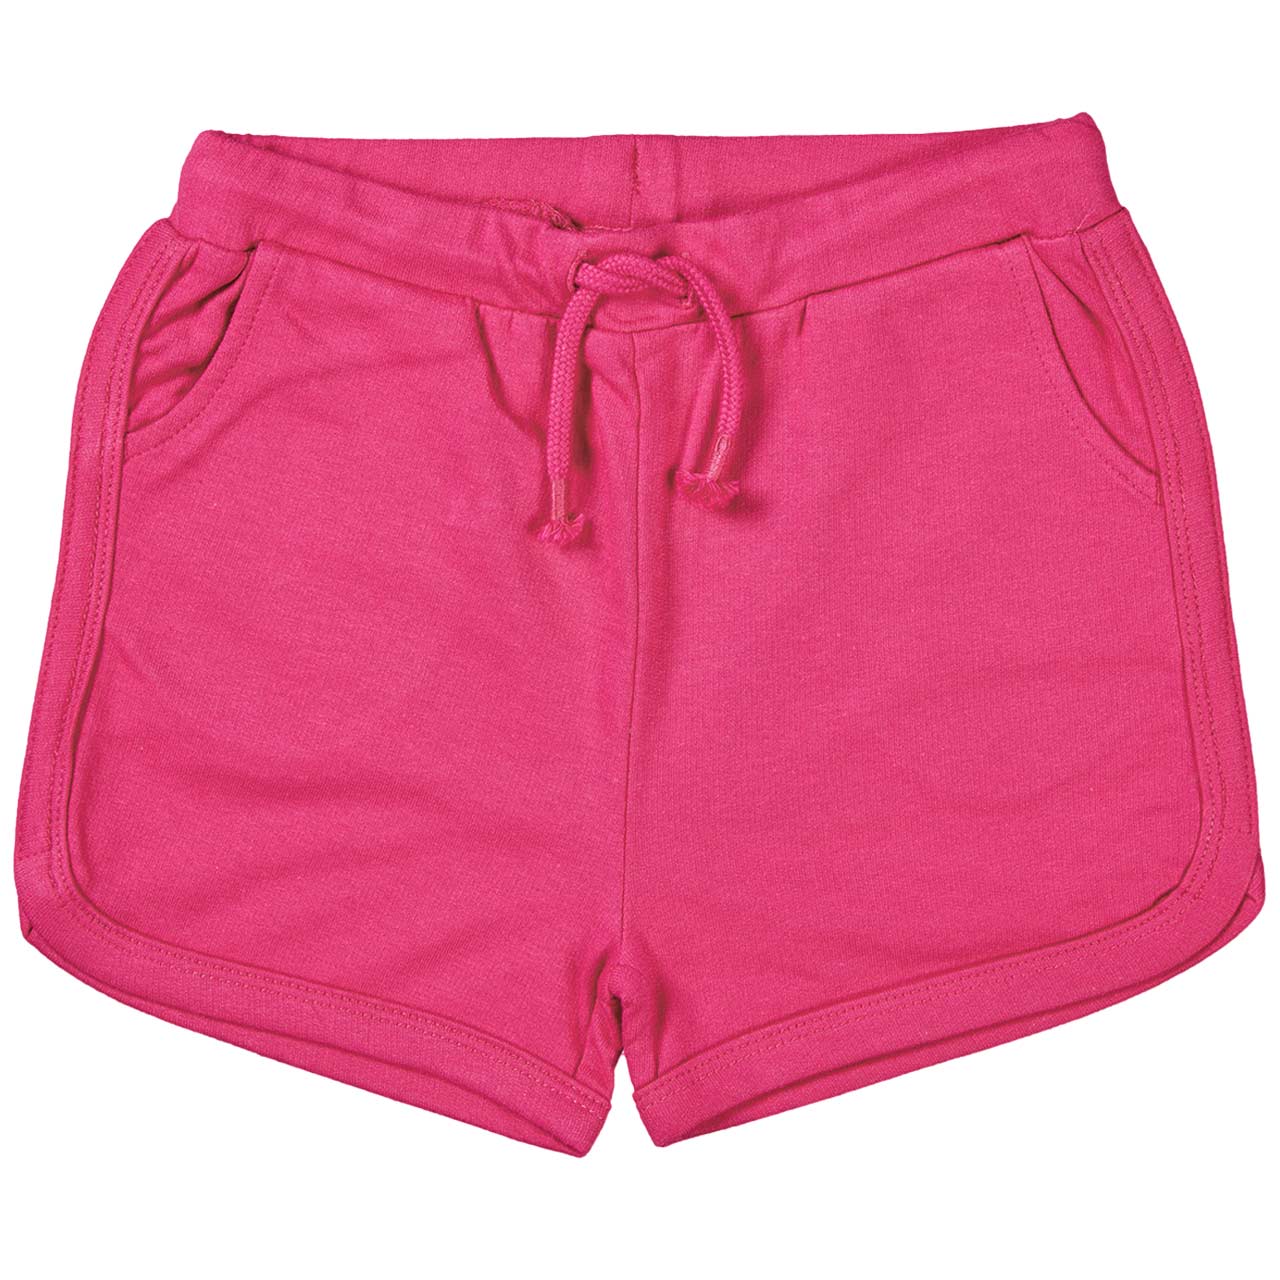 Robuste weiche Sweat Shorts pink